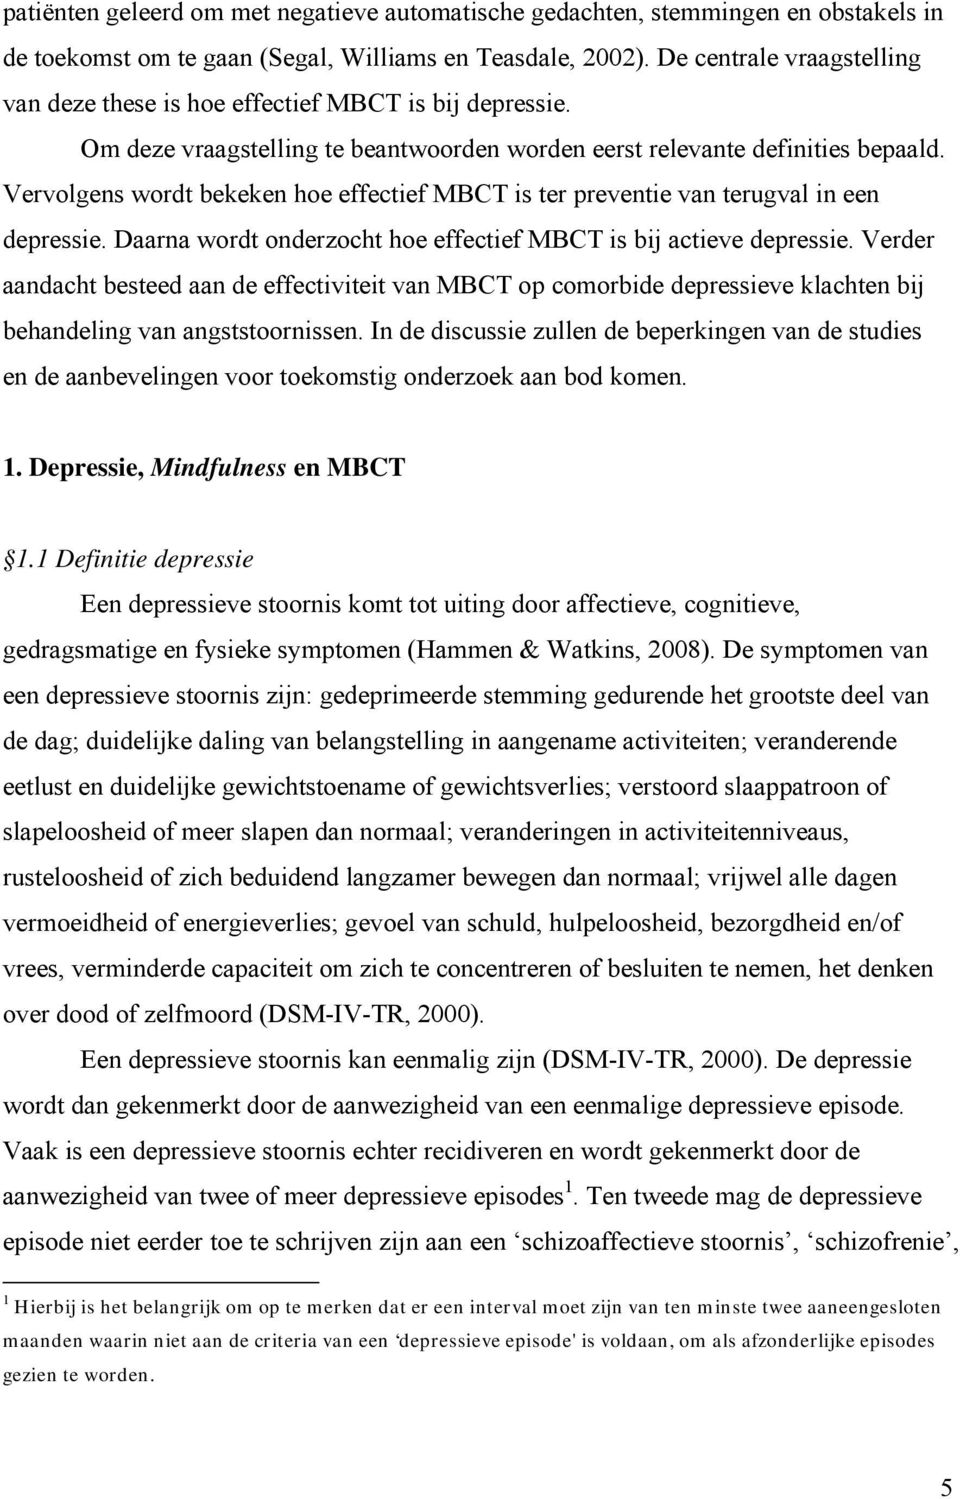 Vervolgens wordt bekeken hoe effectief MBCT is ter preventie van terugval in een depressie. Daarna wordt onderzocht hoe effectief MBCT is bij actieve depressie.